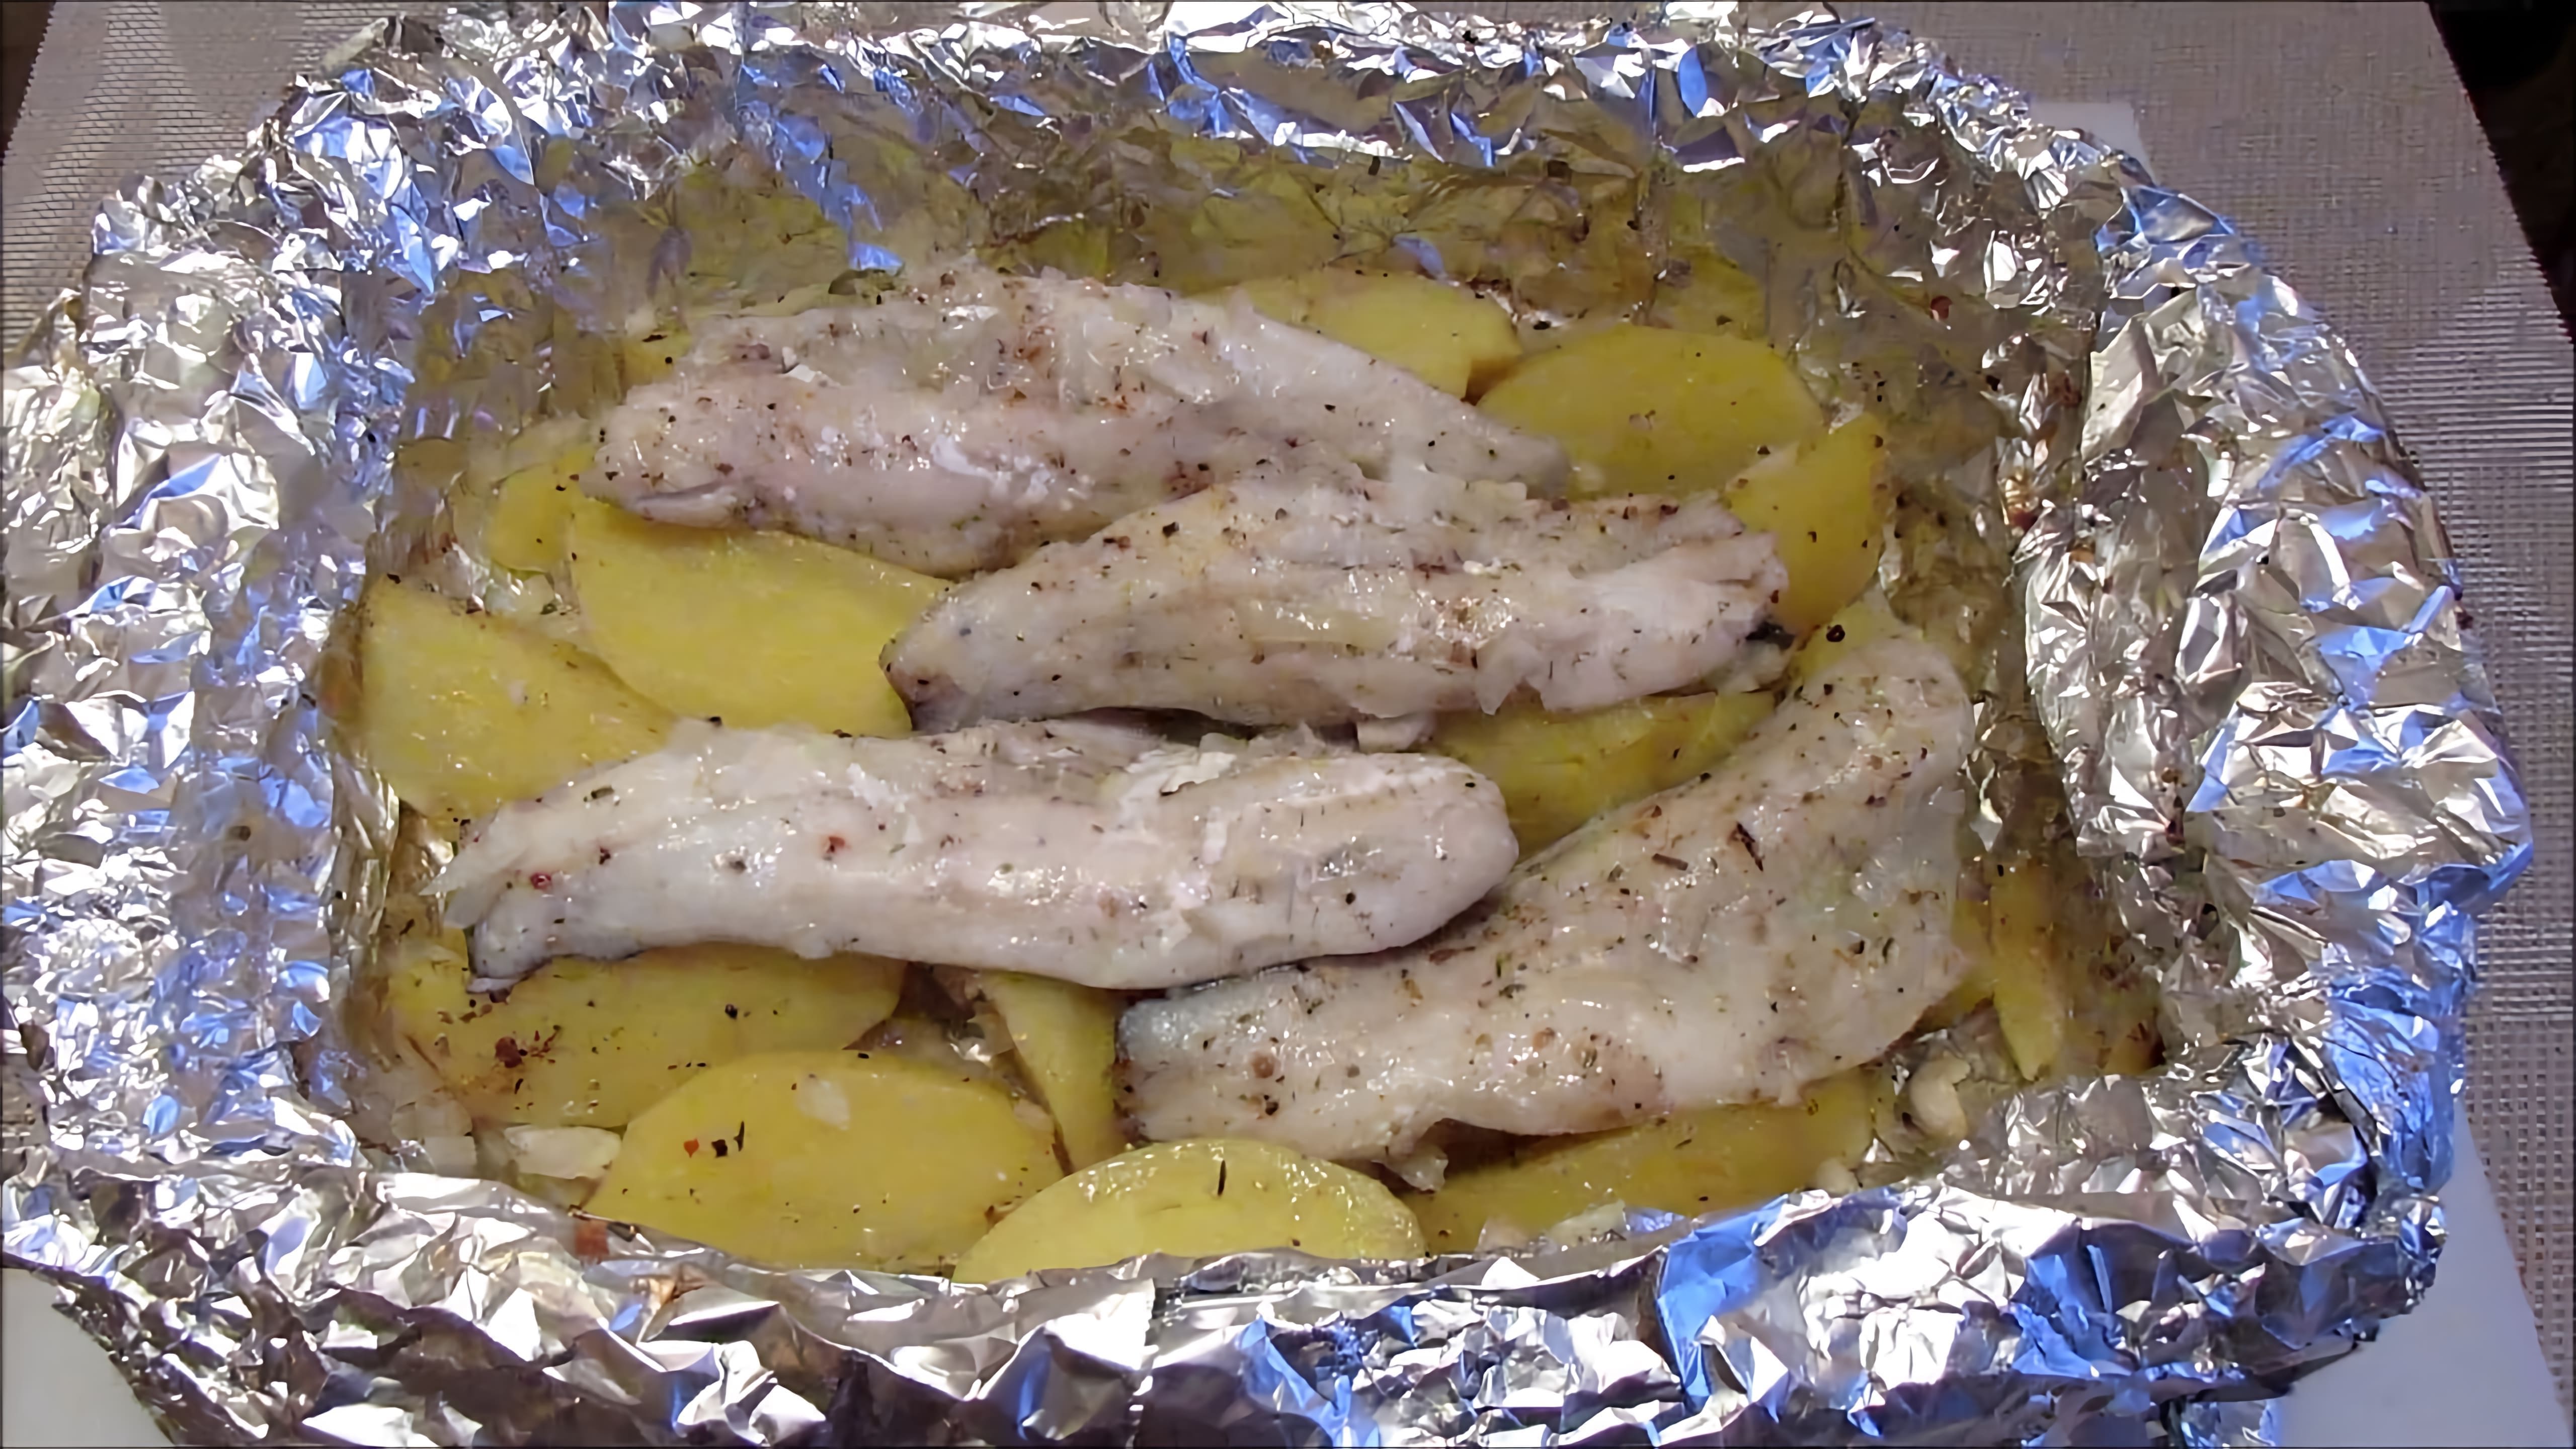 В этом видео демонстрируется процесс приготовления диетического блюда - запеченной рыбы с картошкой в фольге